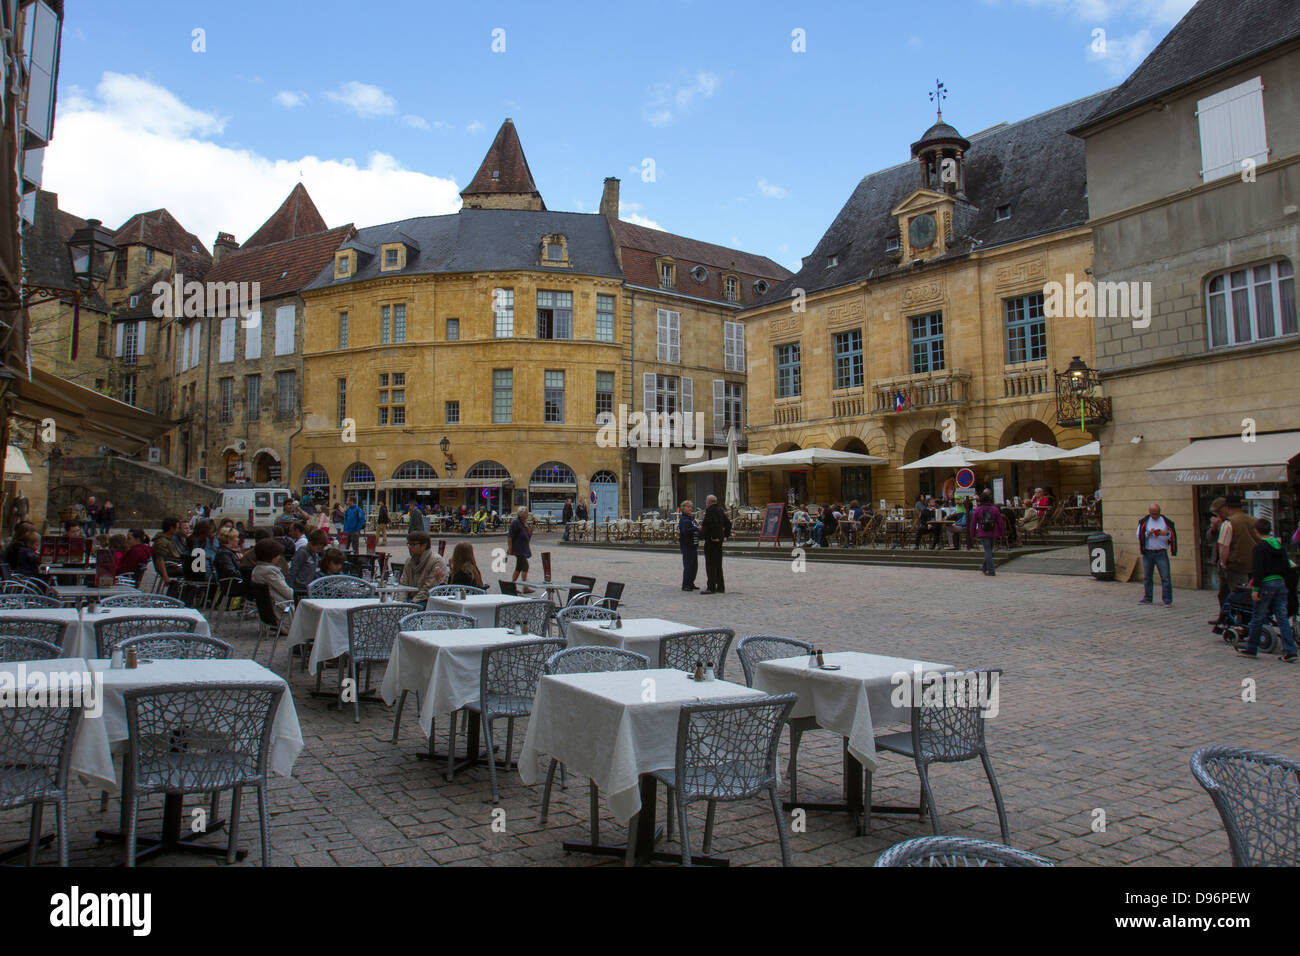 Tourstis passeggiare e mangiare nei caffè Liberty Plaza nel centro dell'affascinante Sarlat Dordogne regione della Francia Foto Stock